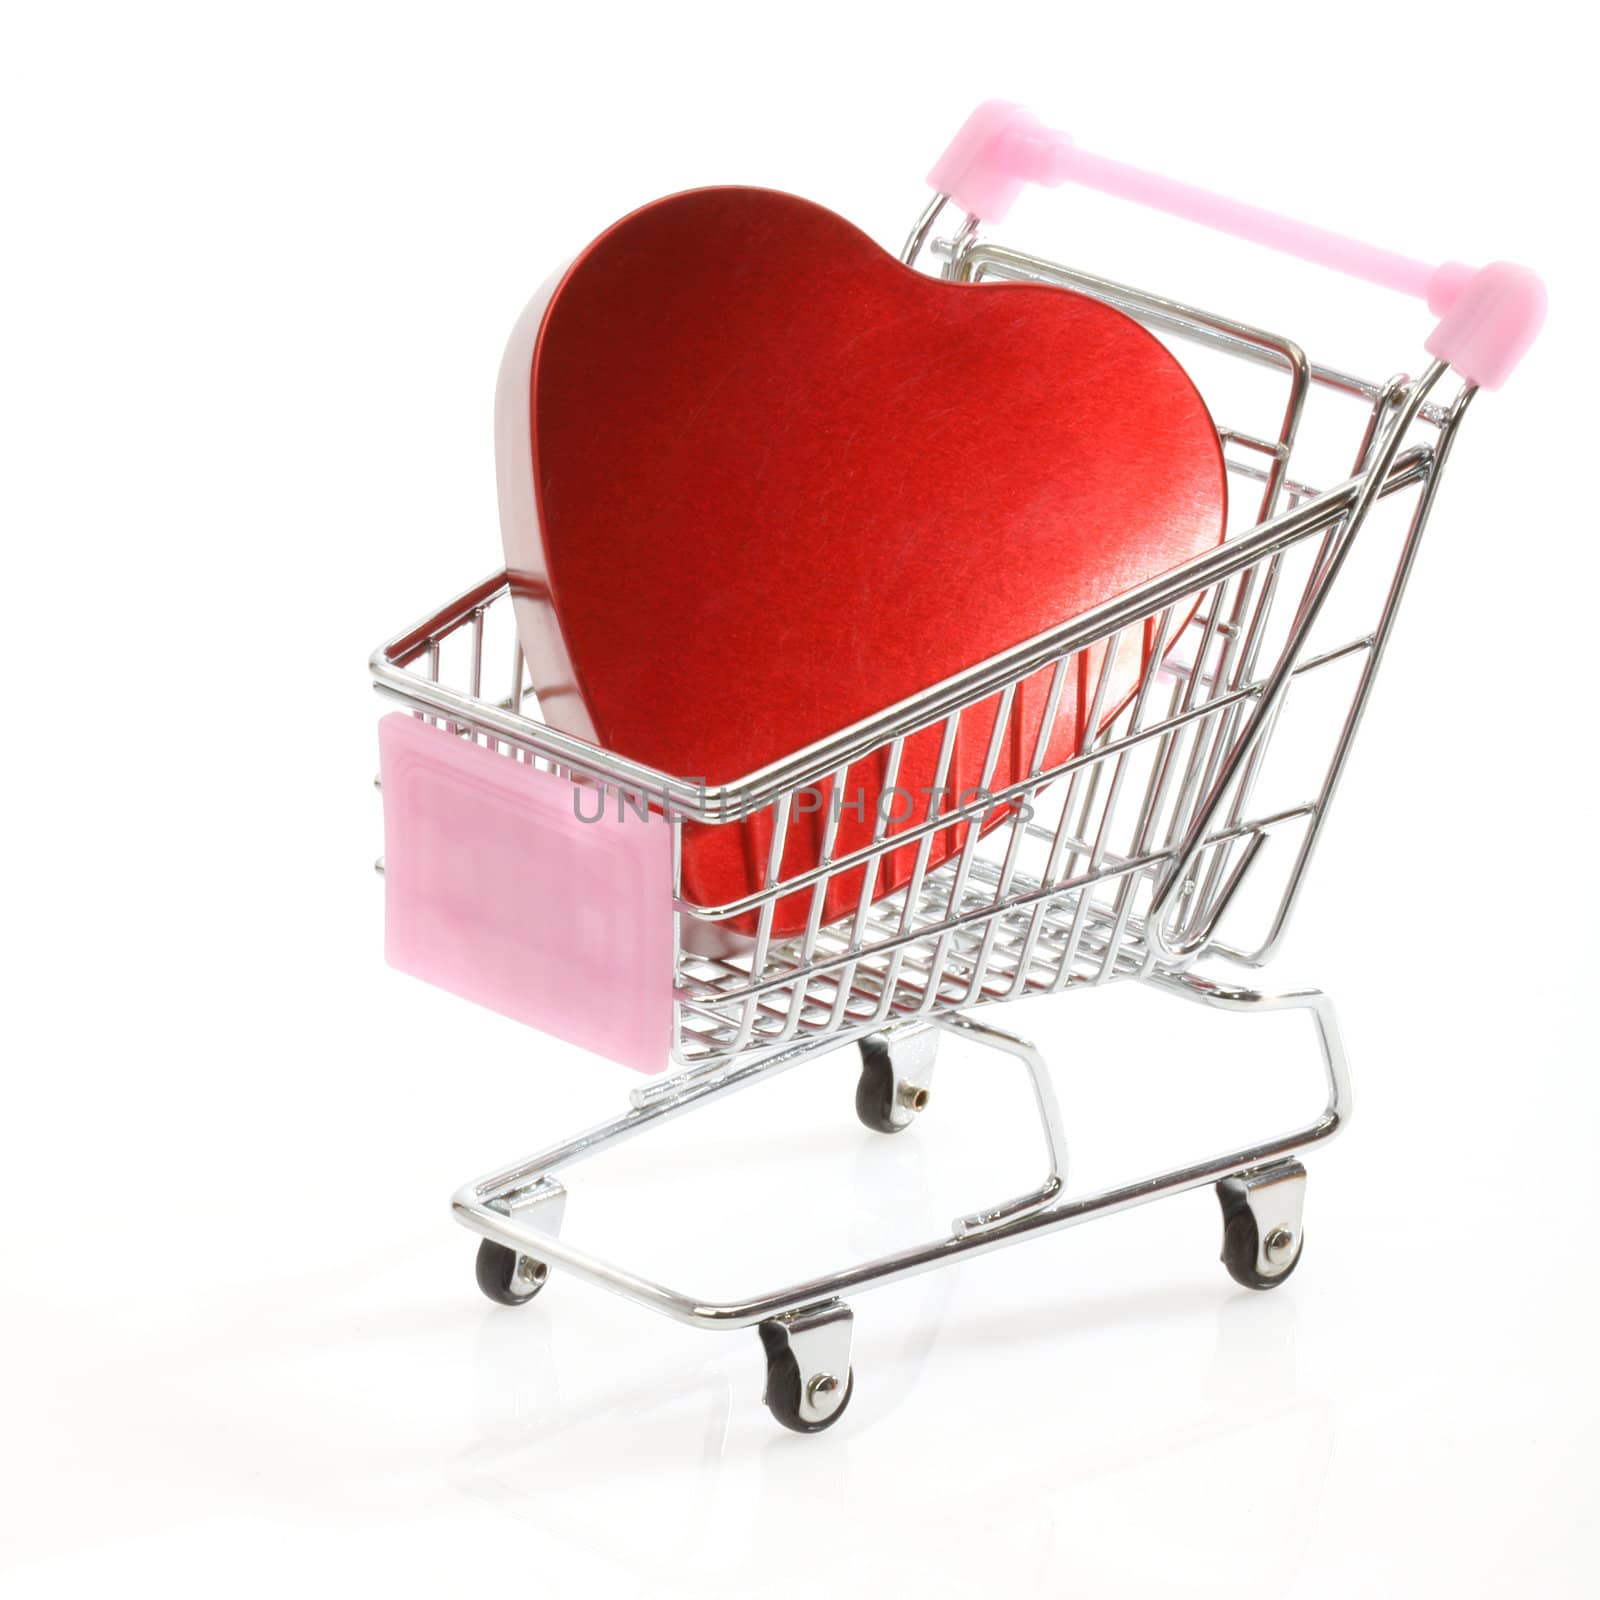  heart in shopping cart by alexkosev